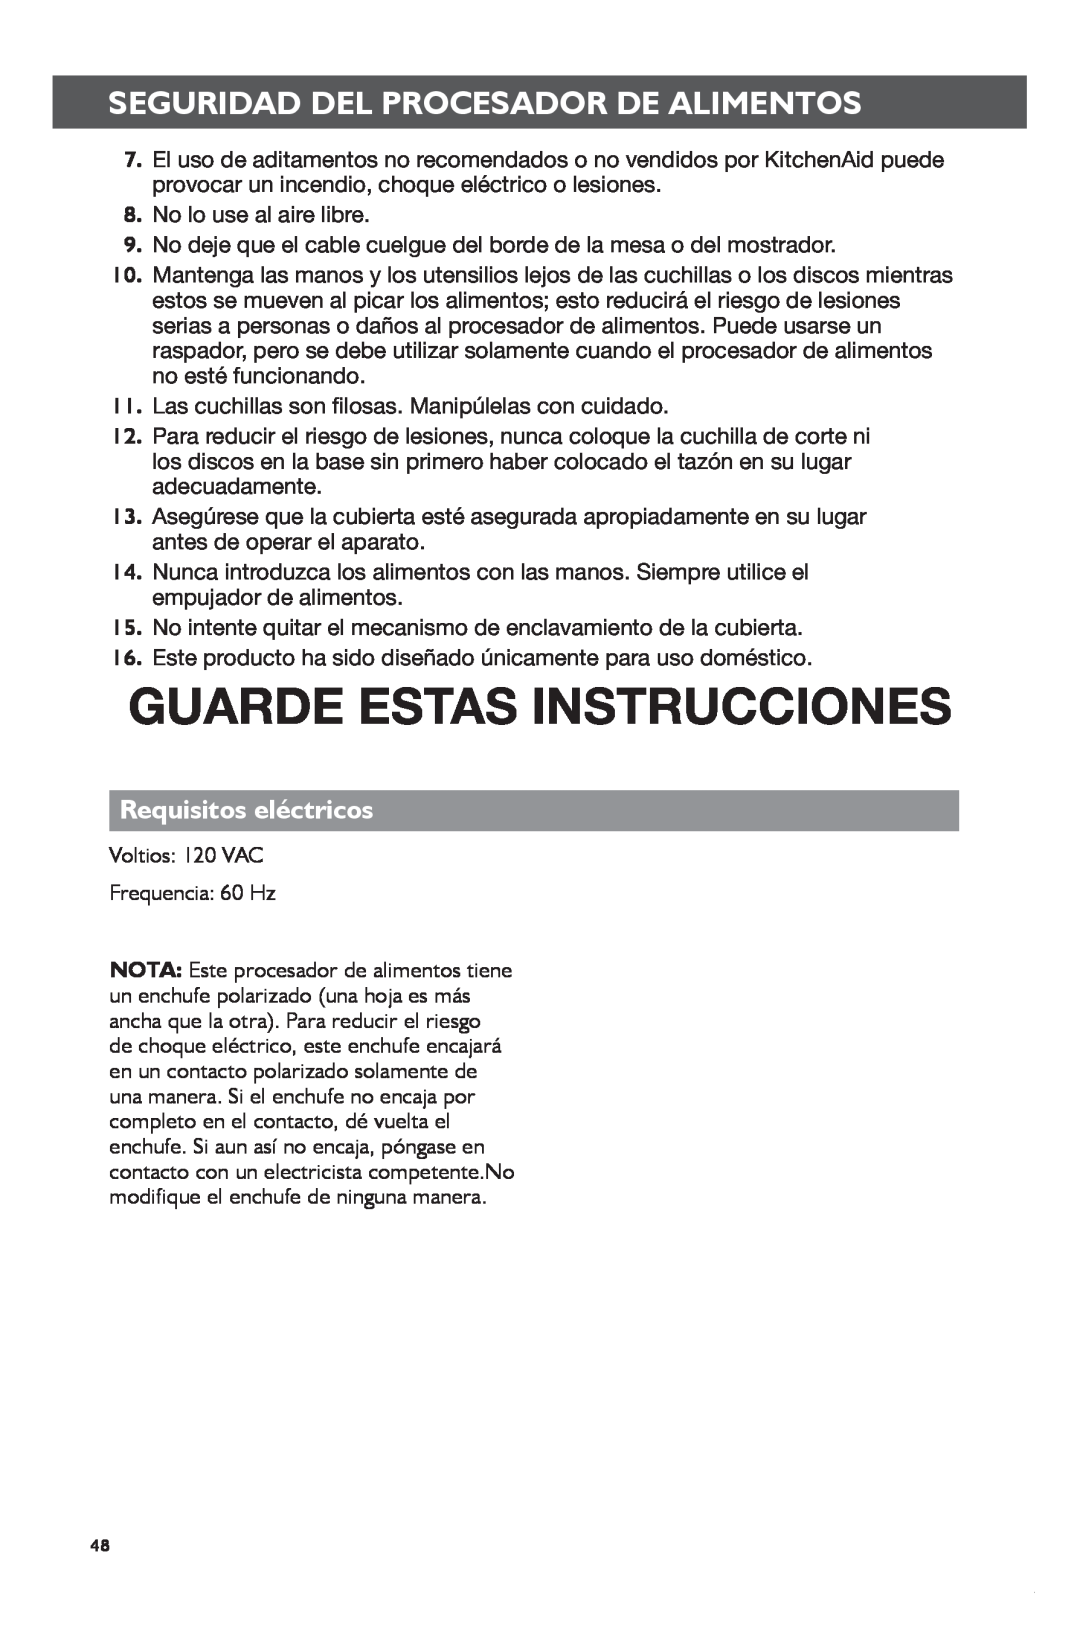 KitchenAid KFP1133 manual Guarde Estas Instrucciones, Requisitos eléctricos 